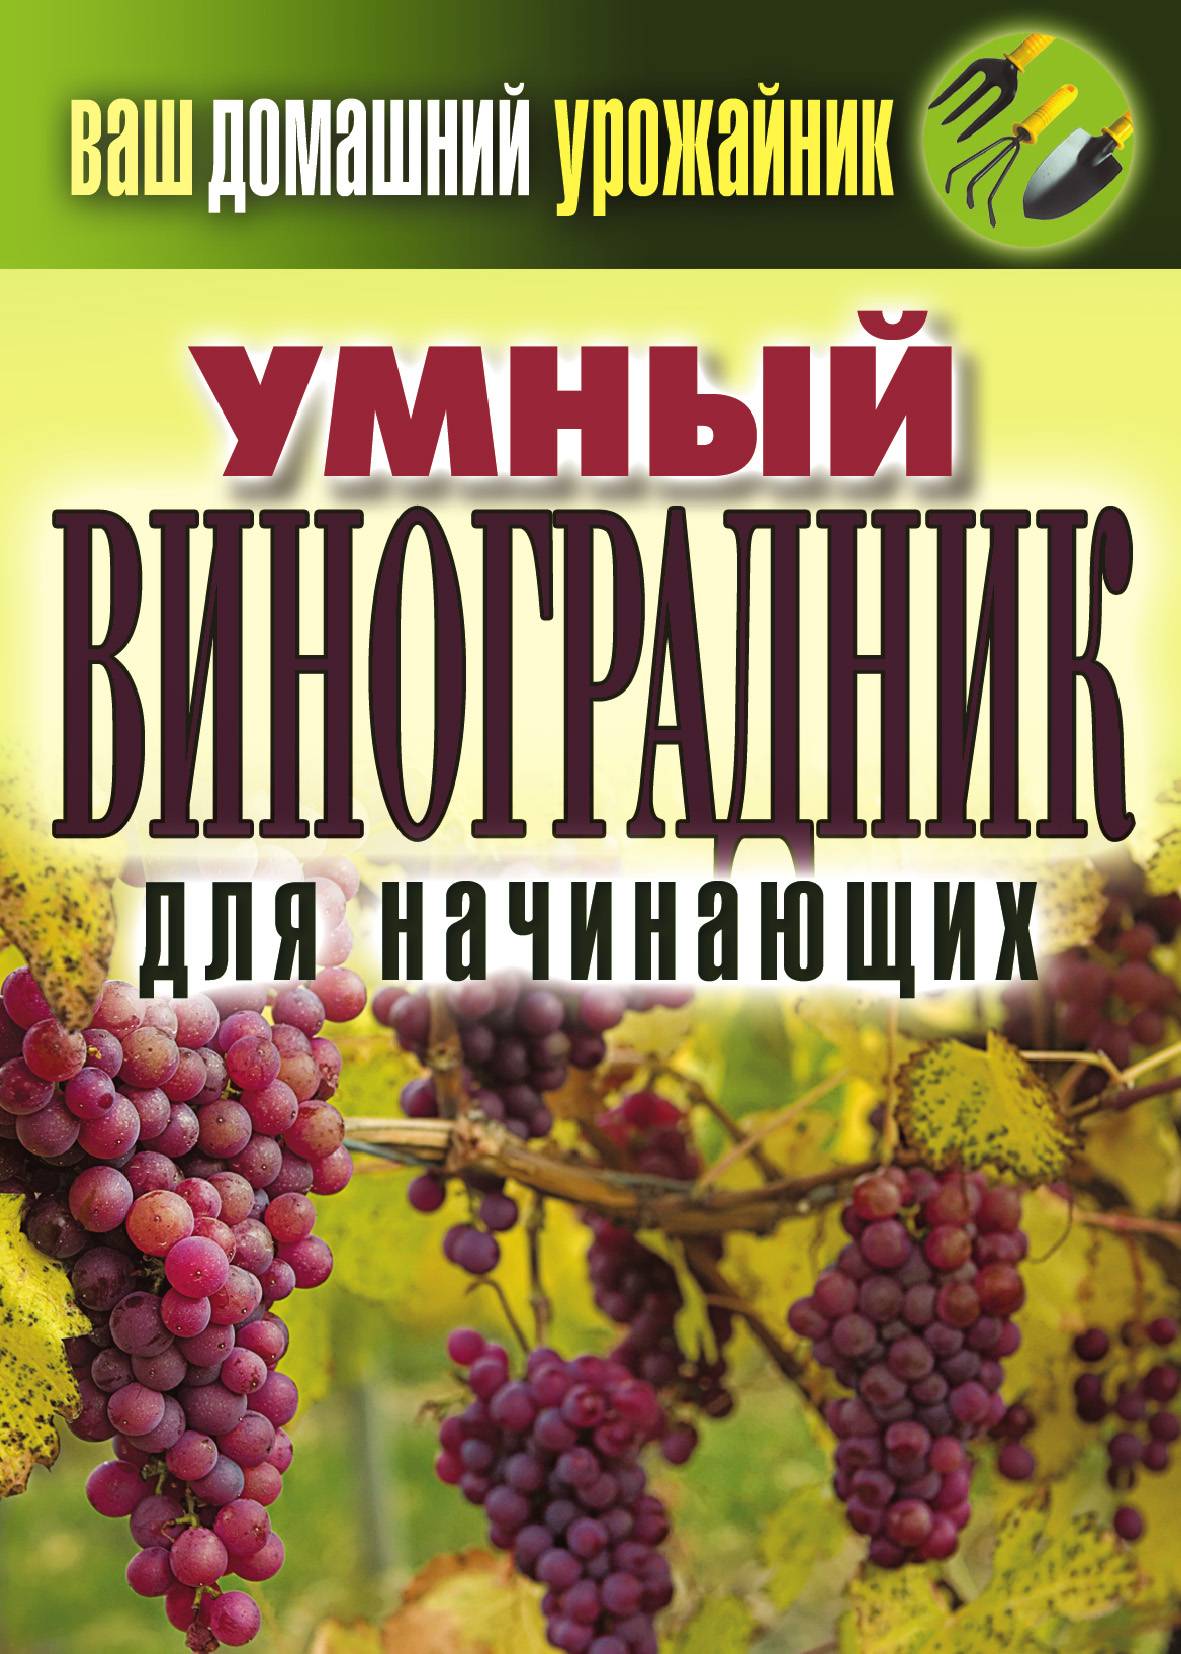 Виноград Рислинг: описание сорта и история выведения, правила выращивания